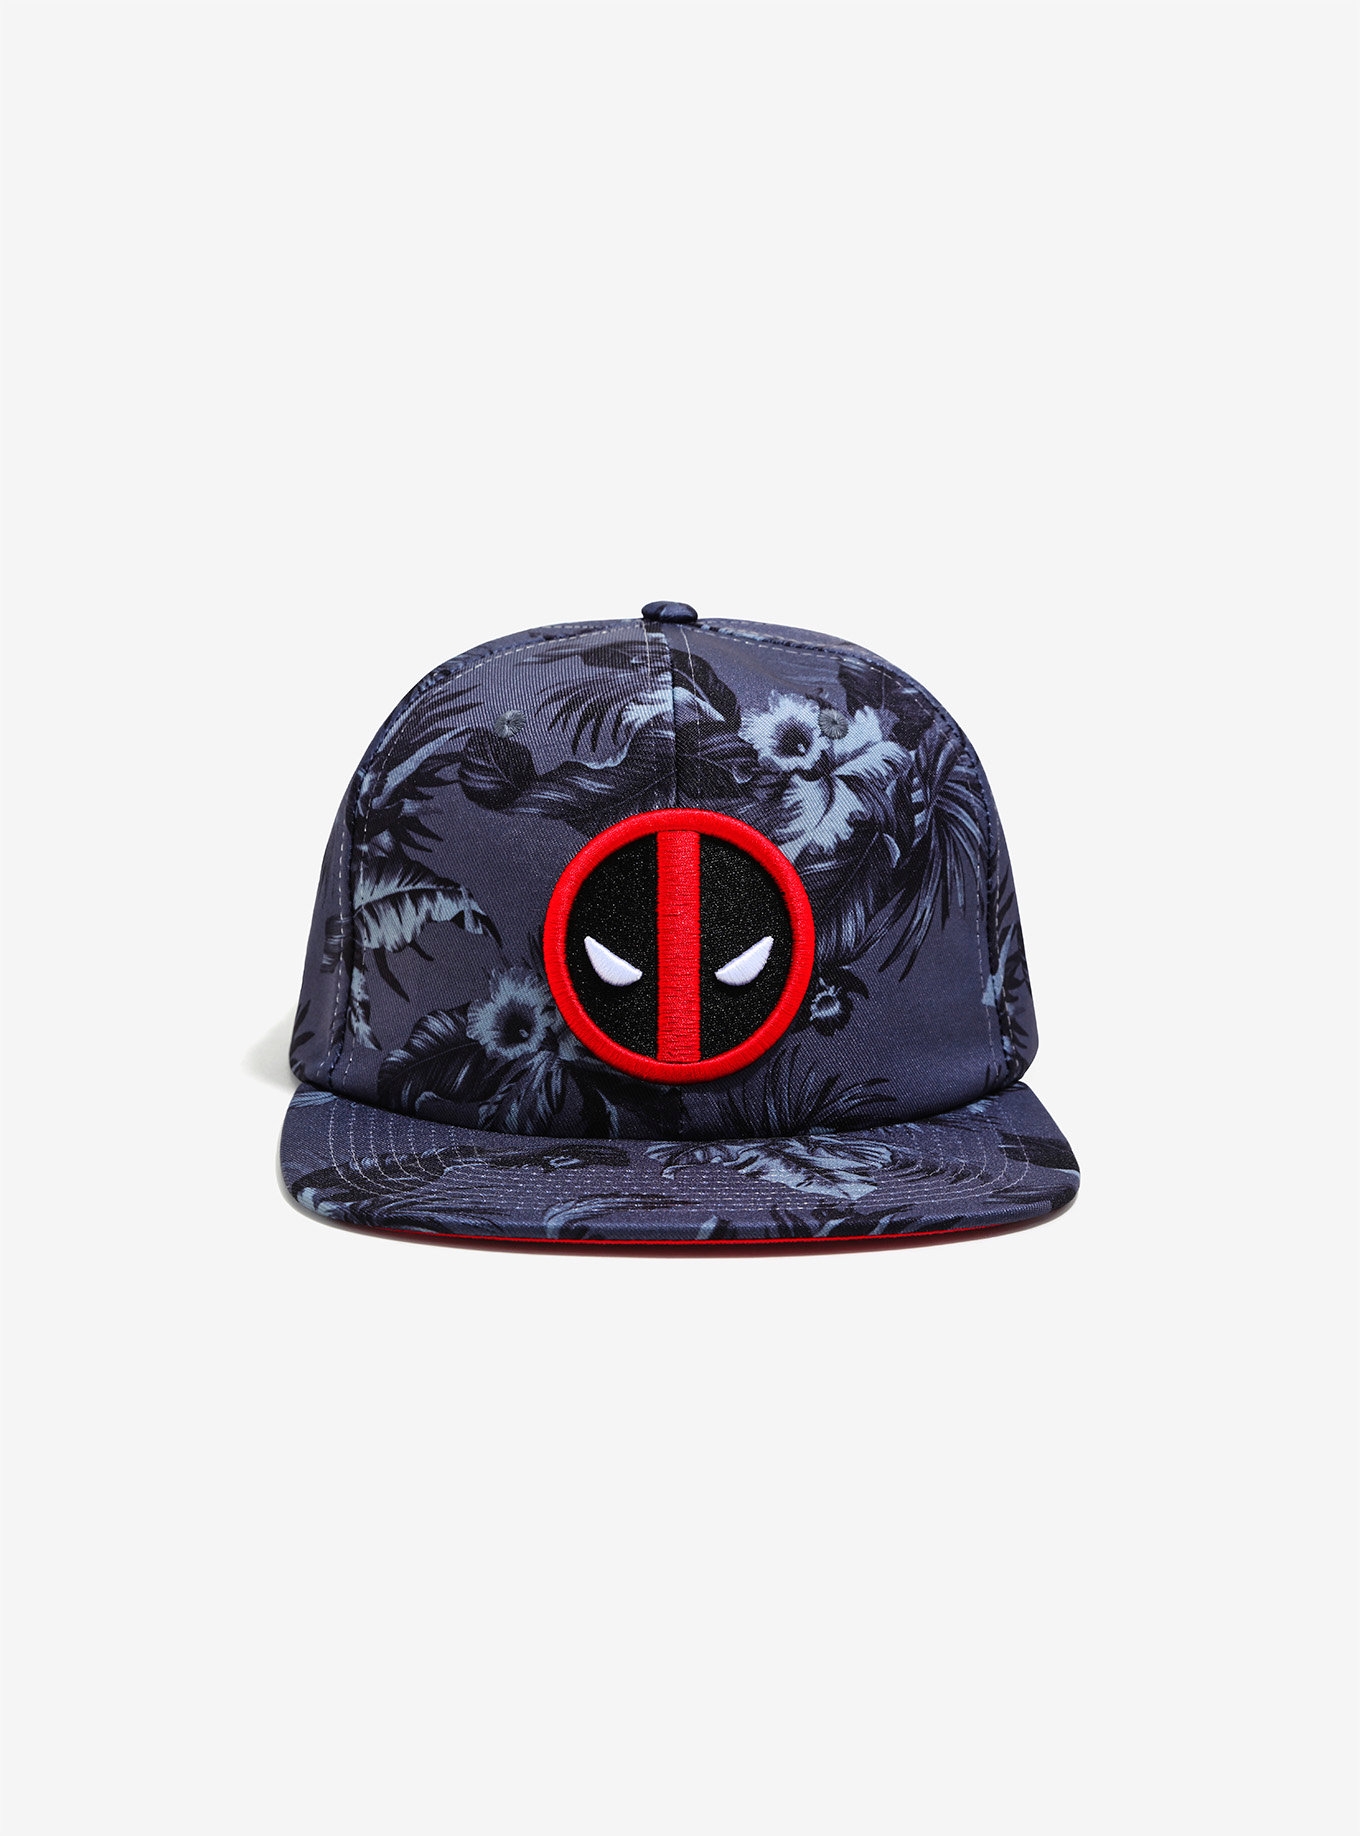 DP hawaiian hat.jpg